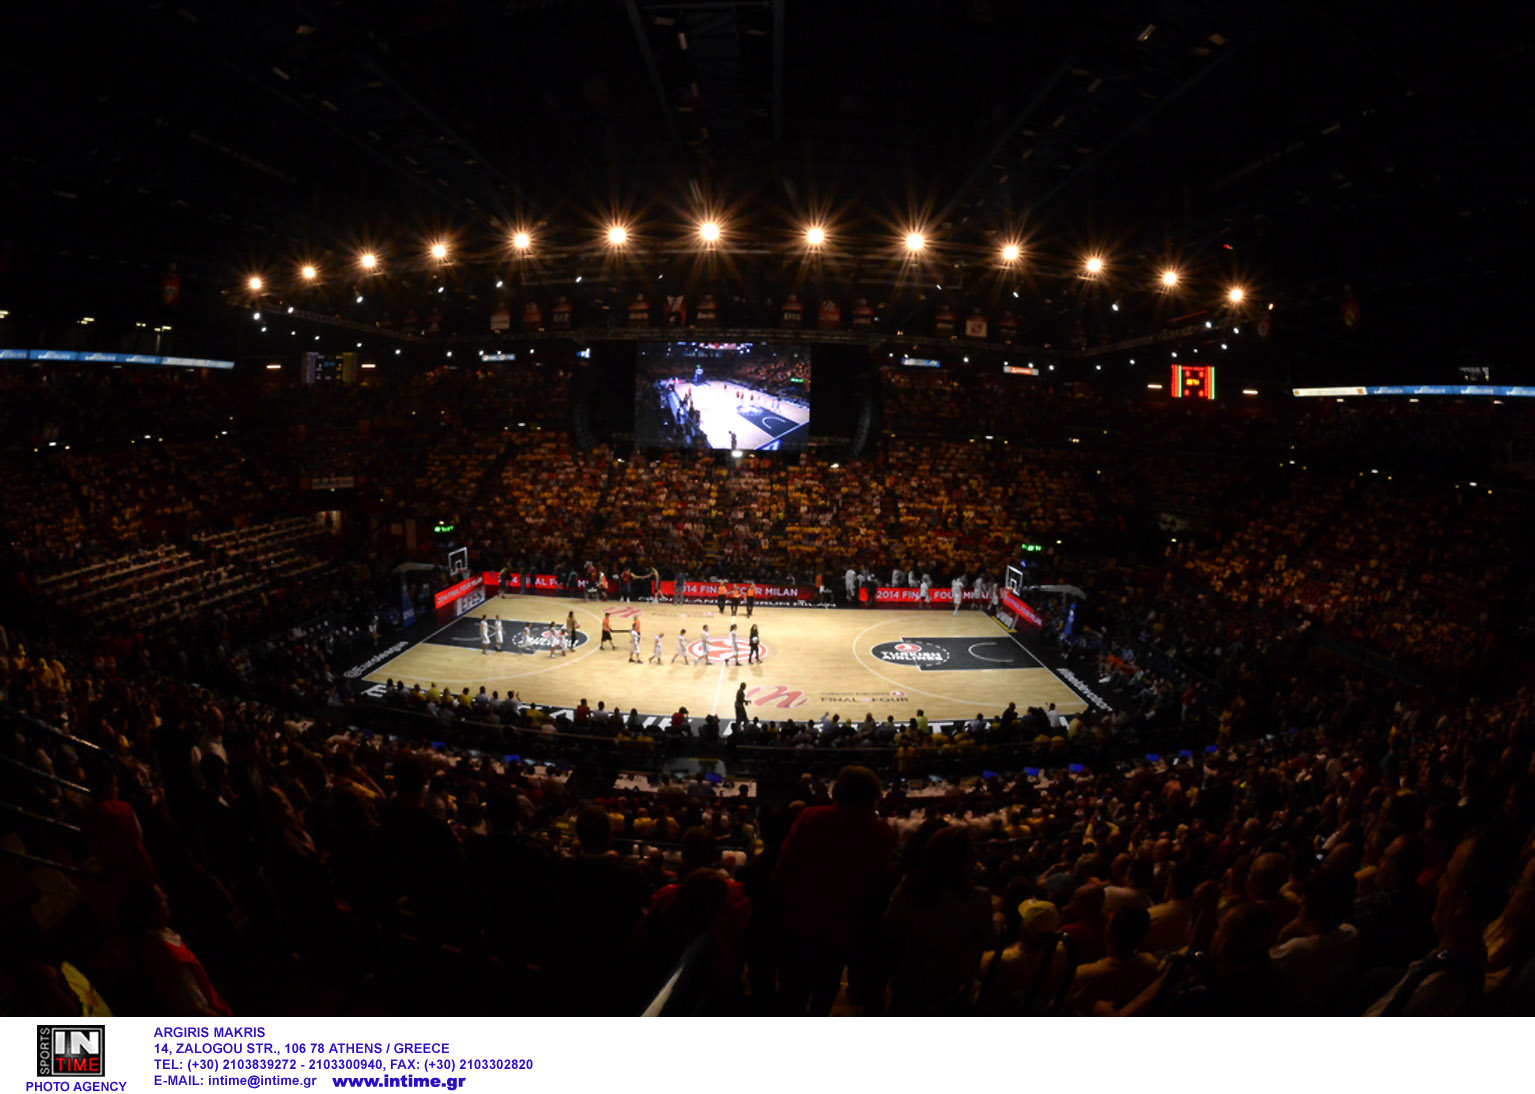 Κορονοϊός: Χωρίς υποβιβασμούς το πρωτάθλημα μπάσκετ στην Ισπανία και αύξηση των ομάδων